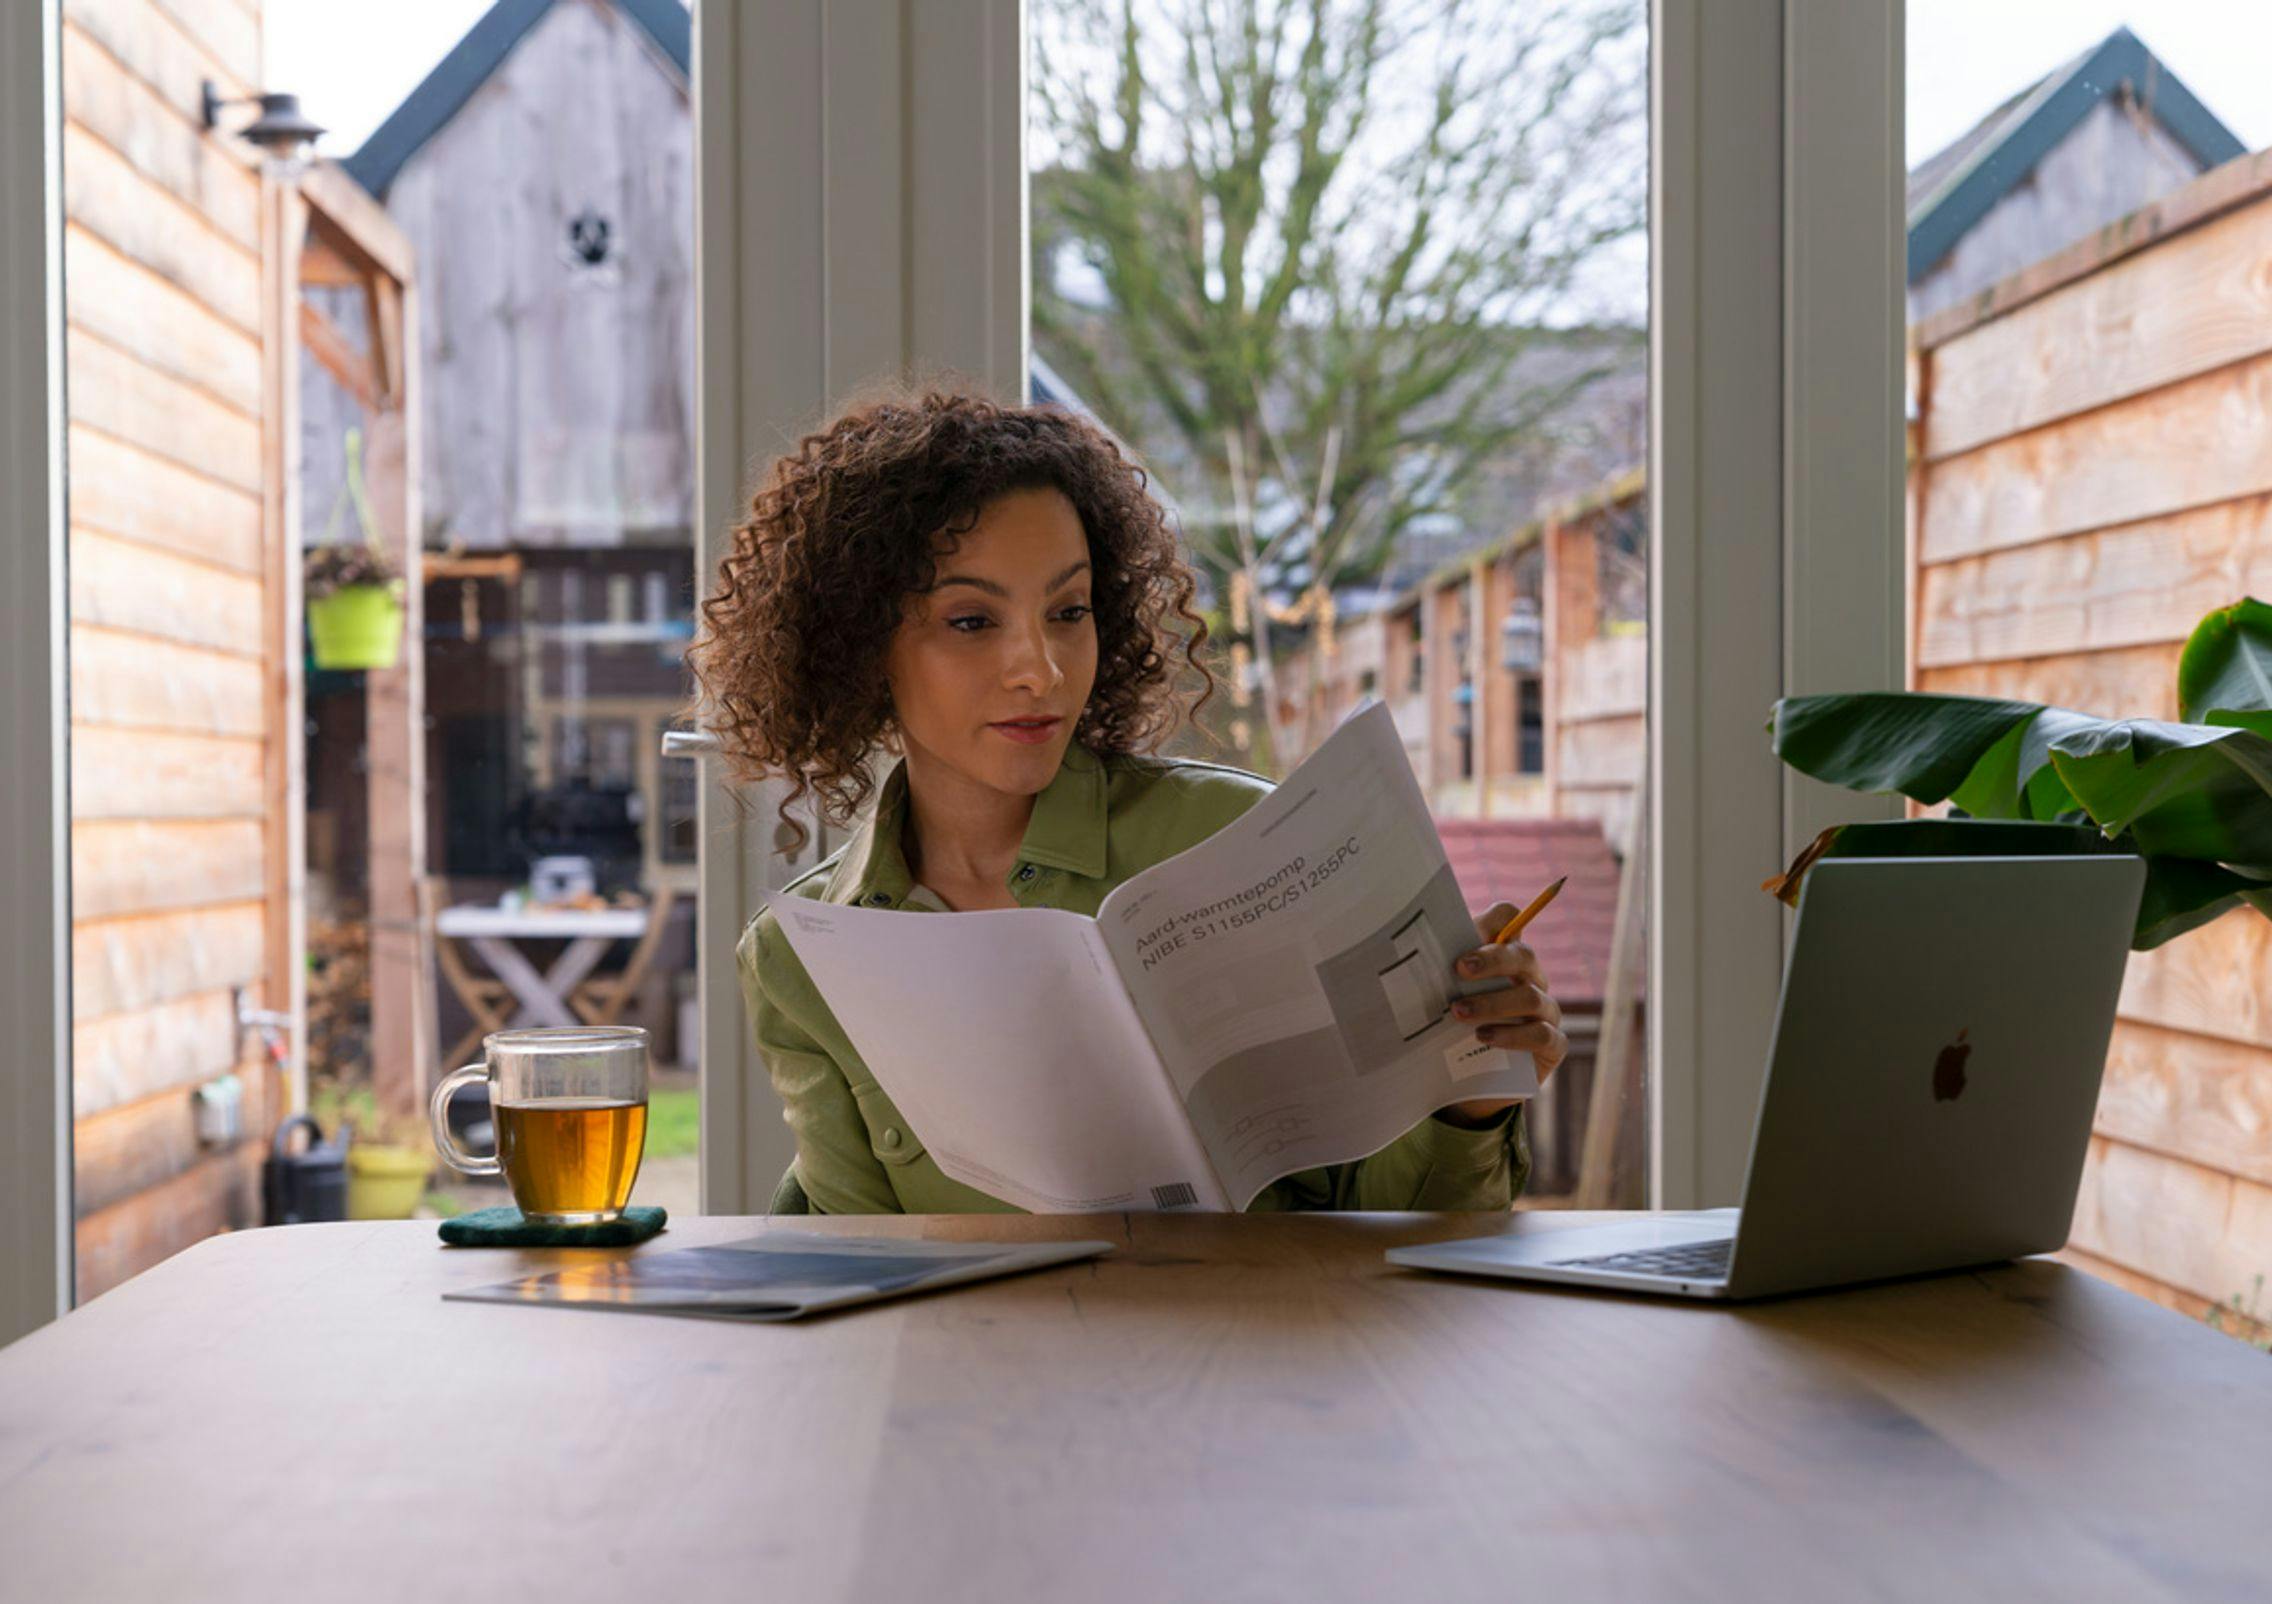 Vrouw aan keukentafel, kijkend in folder, folder in beeld, titel Warmtepomp leesbaar. Tuindeuren op achtergrond, Apple laptop op tafel.